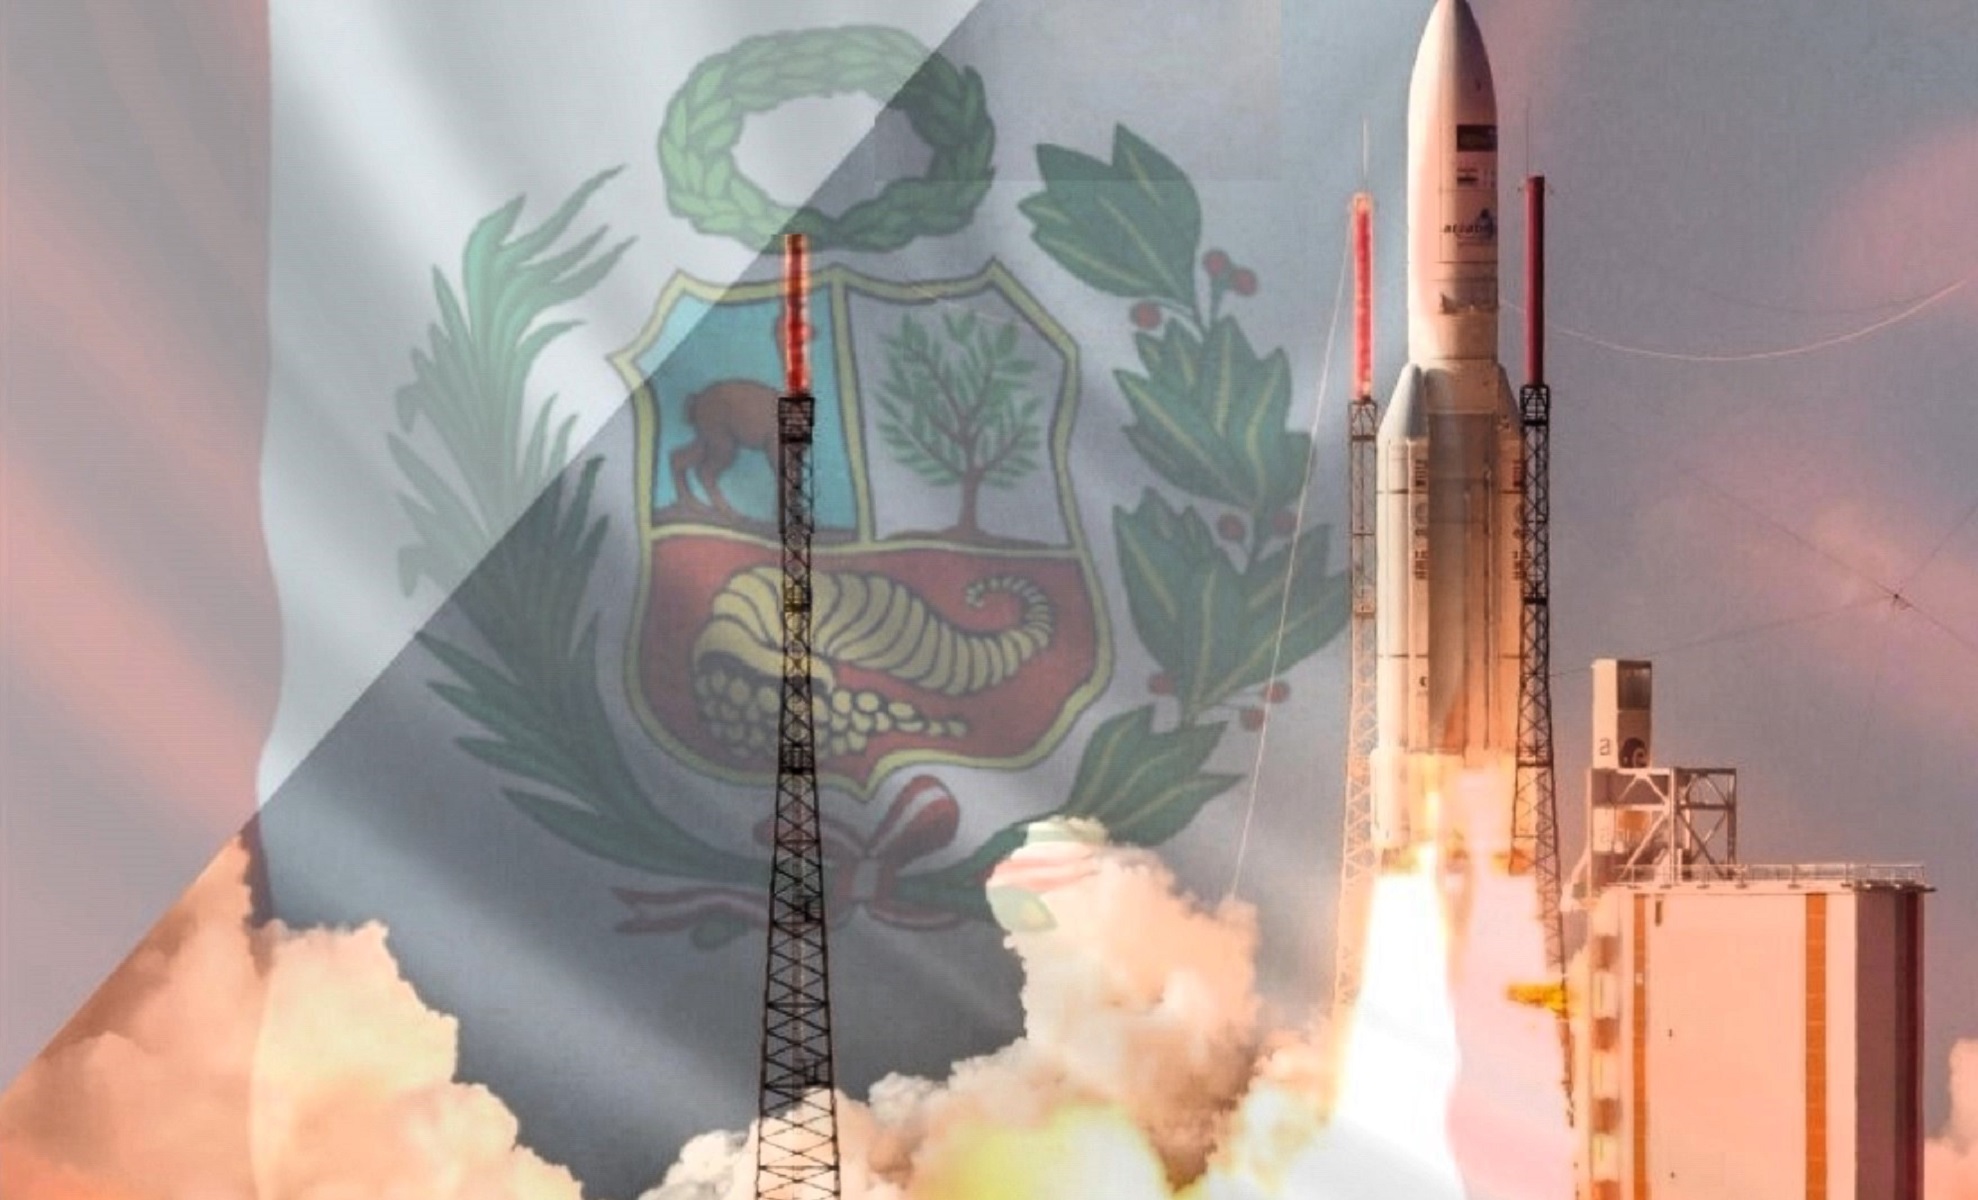 El Perú entrará a la carrera espacial, con su Puerto Espacial, que podría construirse en la Base Aérea “El Pato” en Talara, cerca a la Línea Ecuatorial.